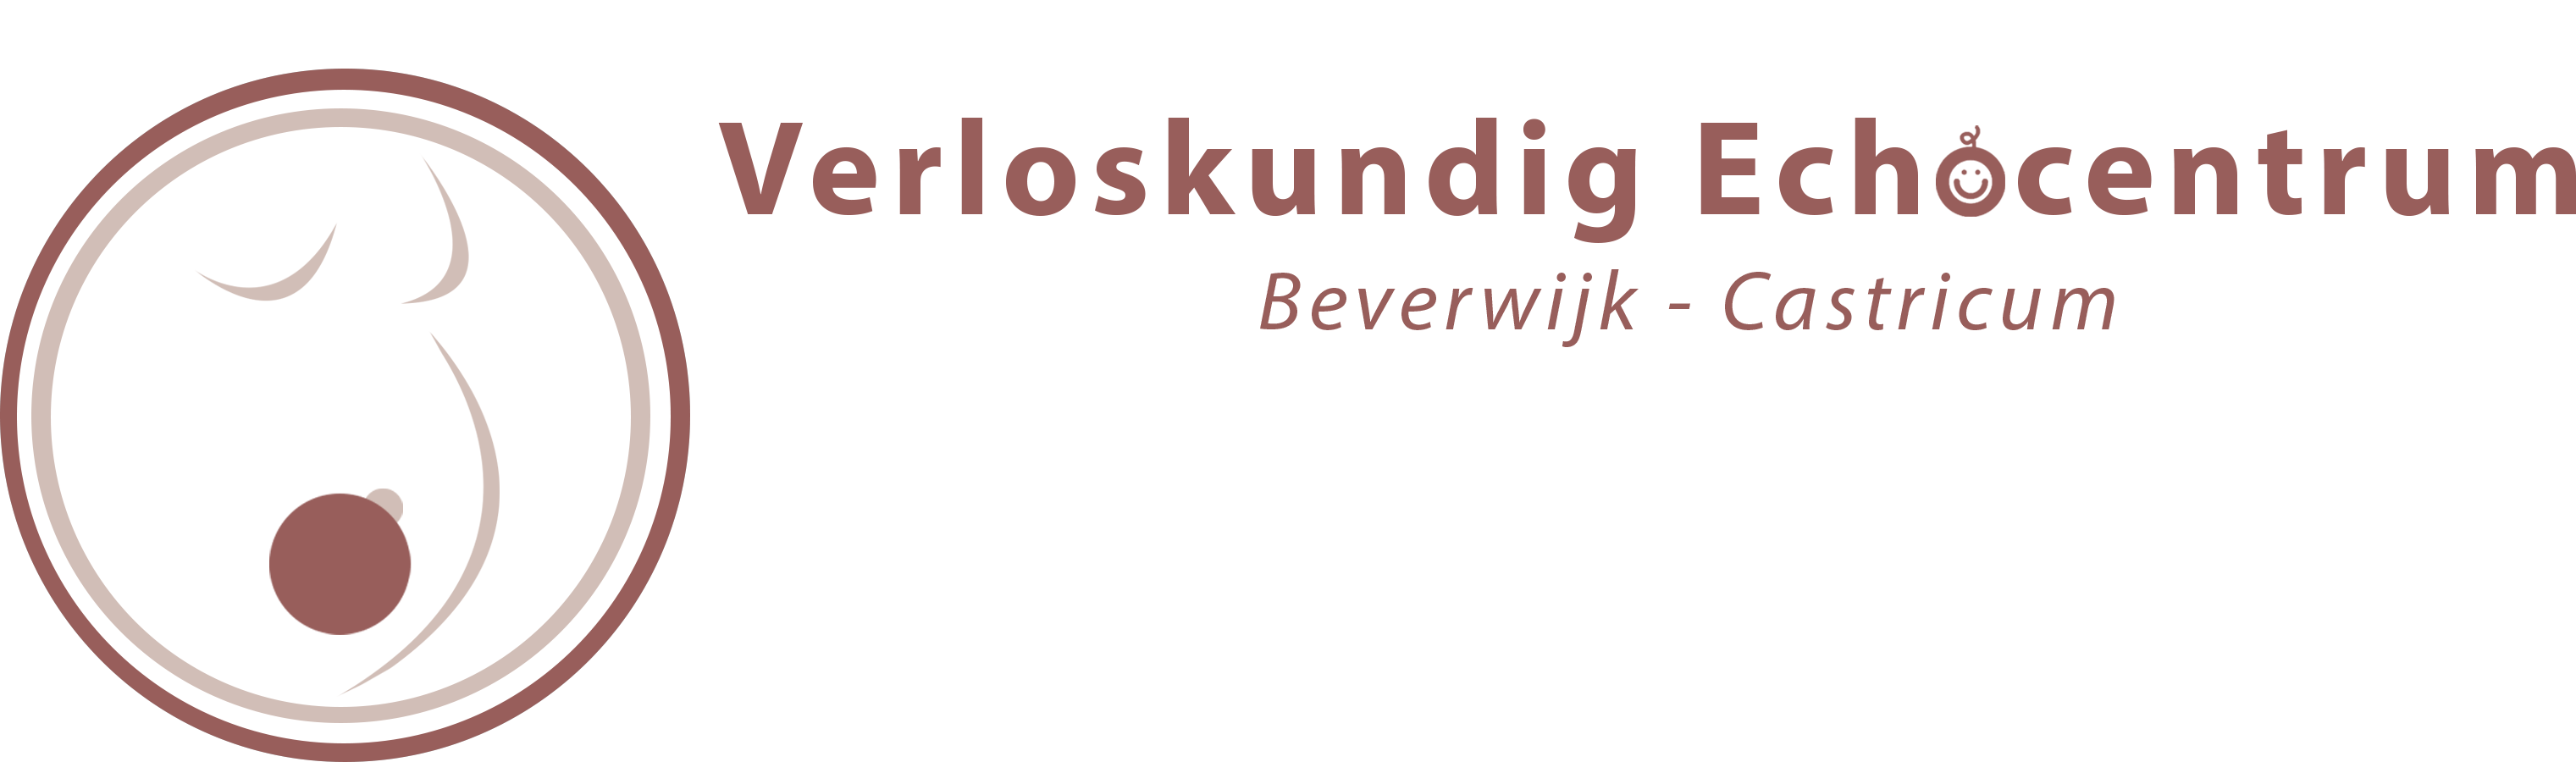 Verloskundig Echocentrum Beverwijk Castricum